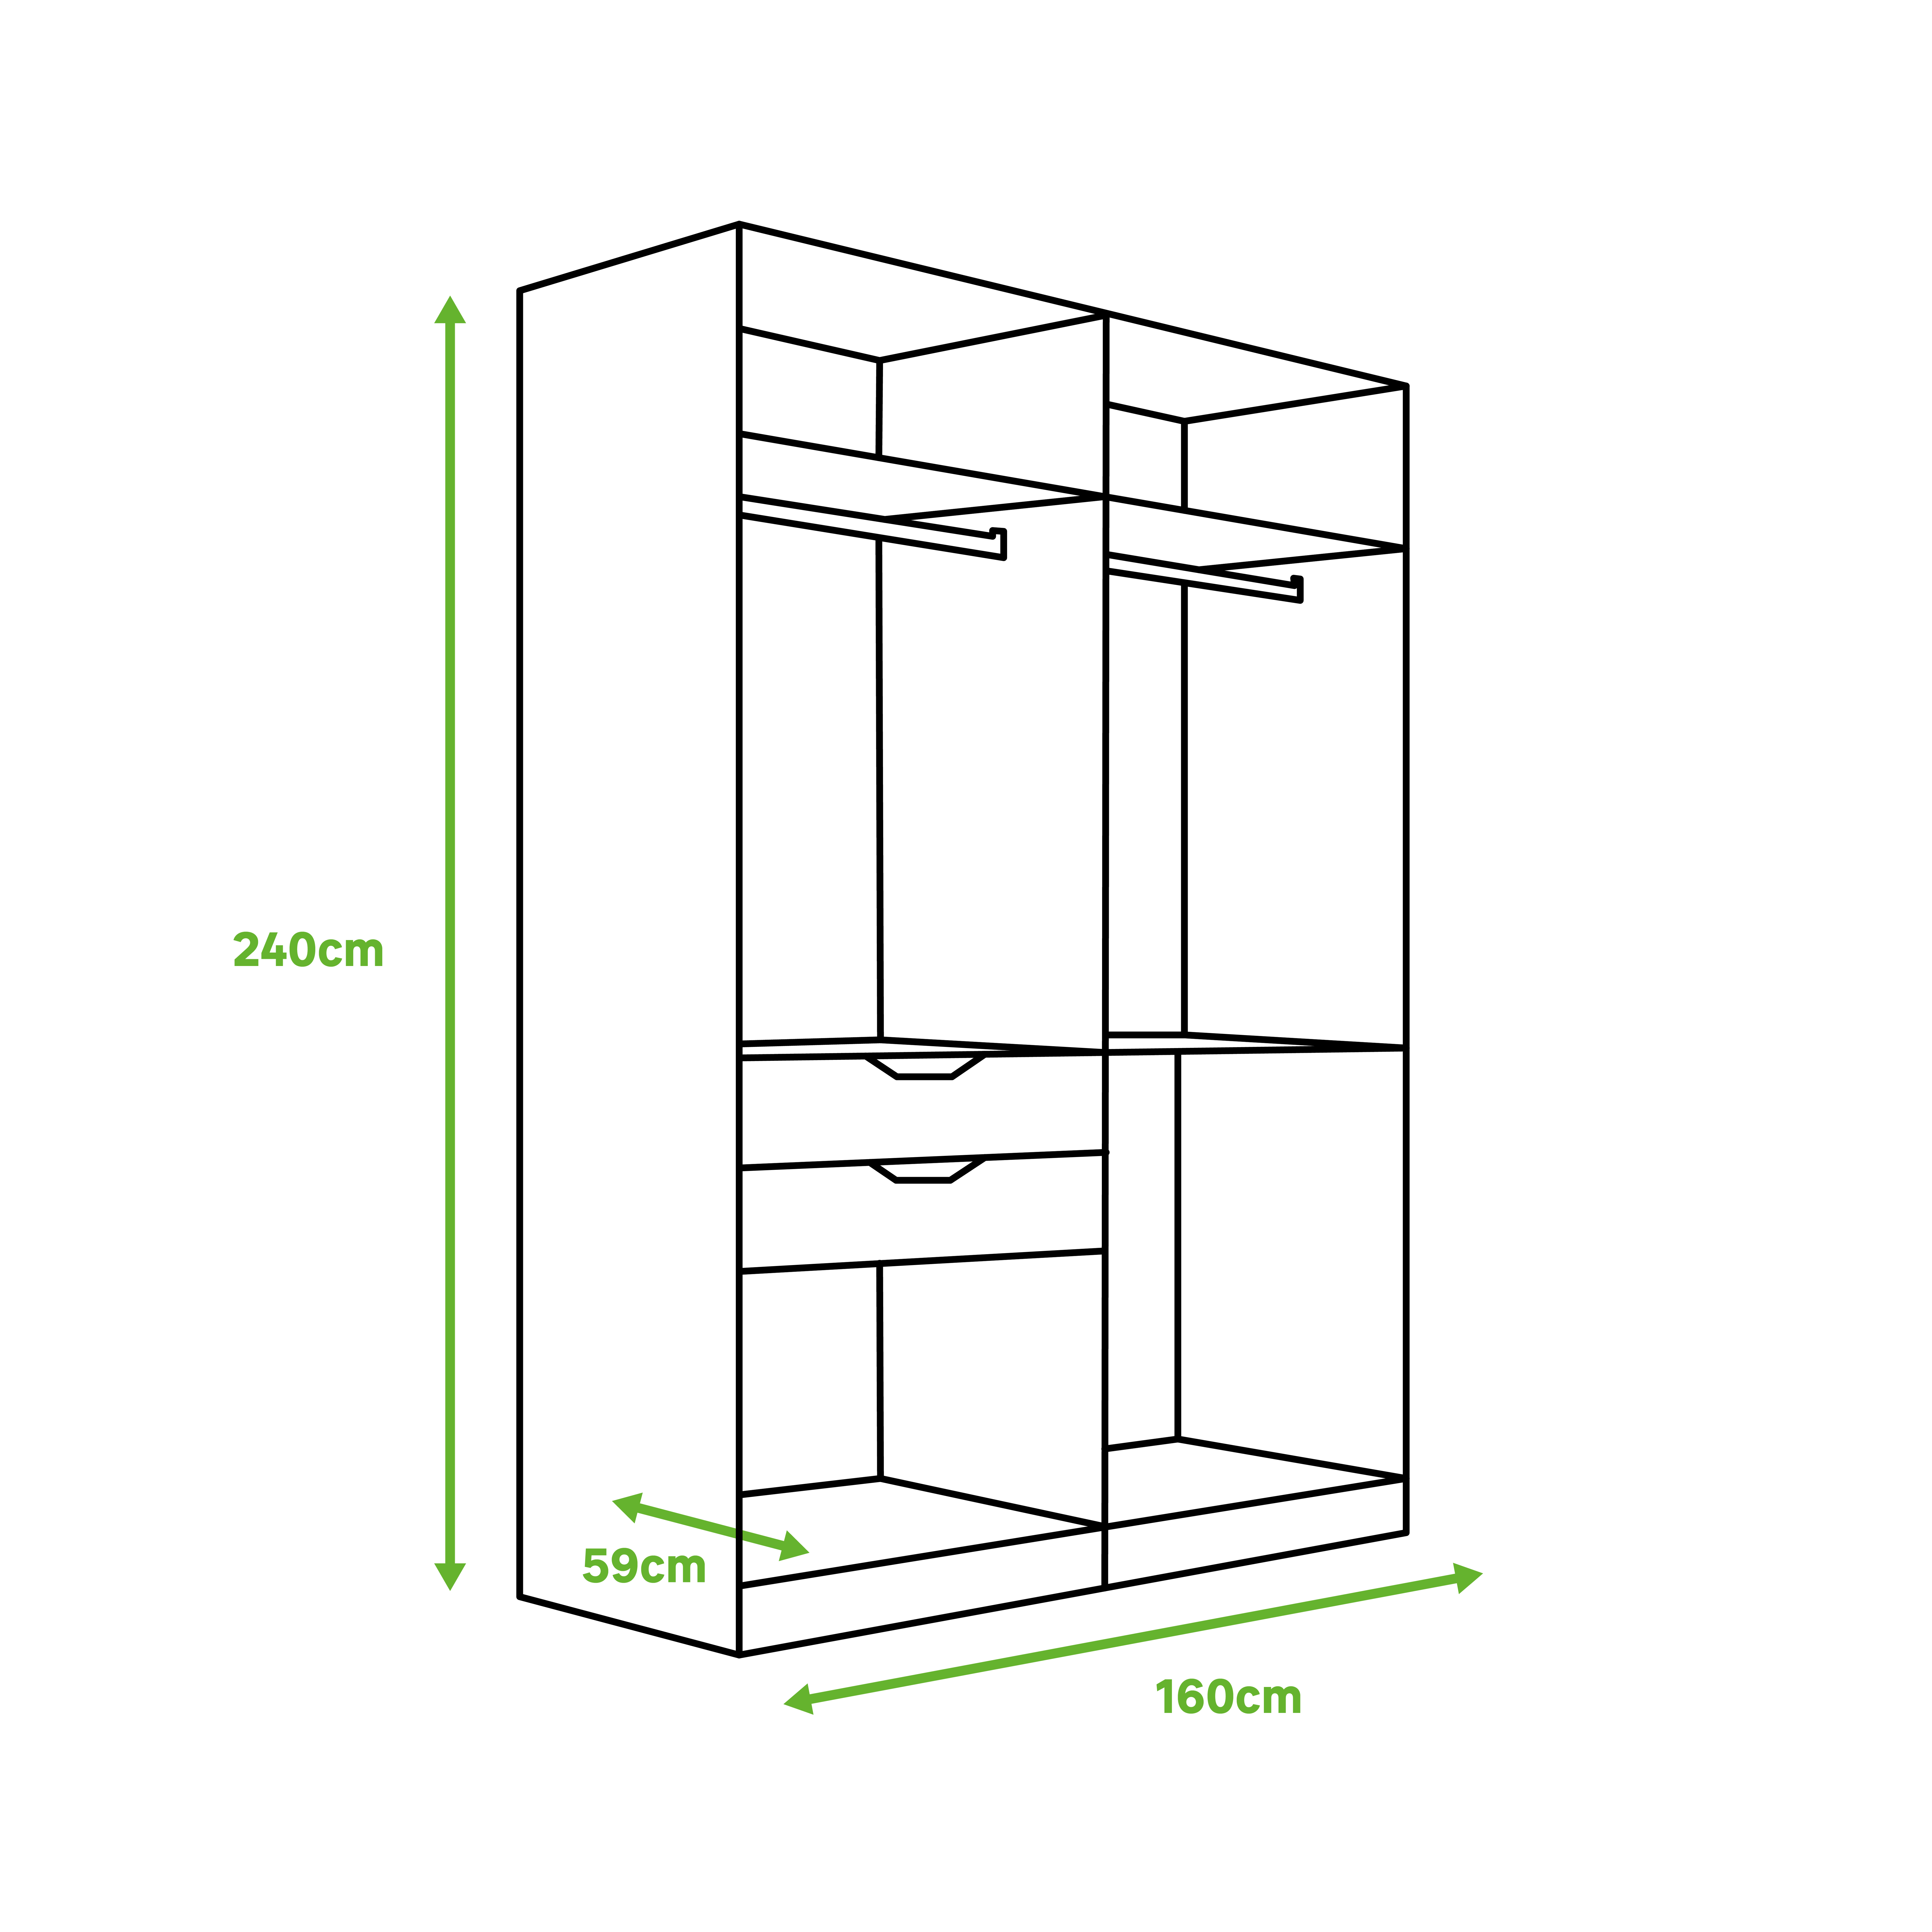 Cuáles son las medidas estándar de un armario?